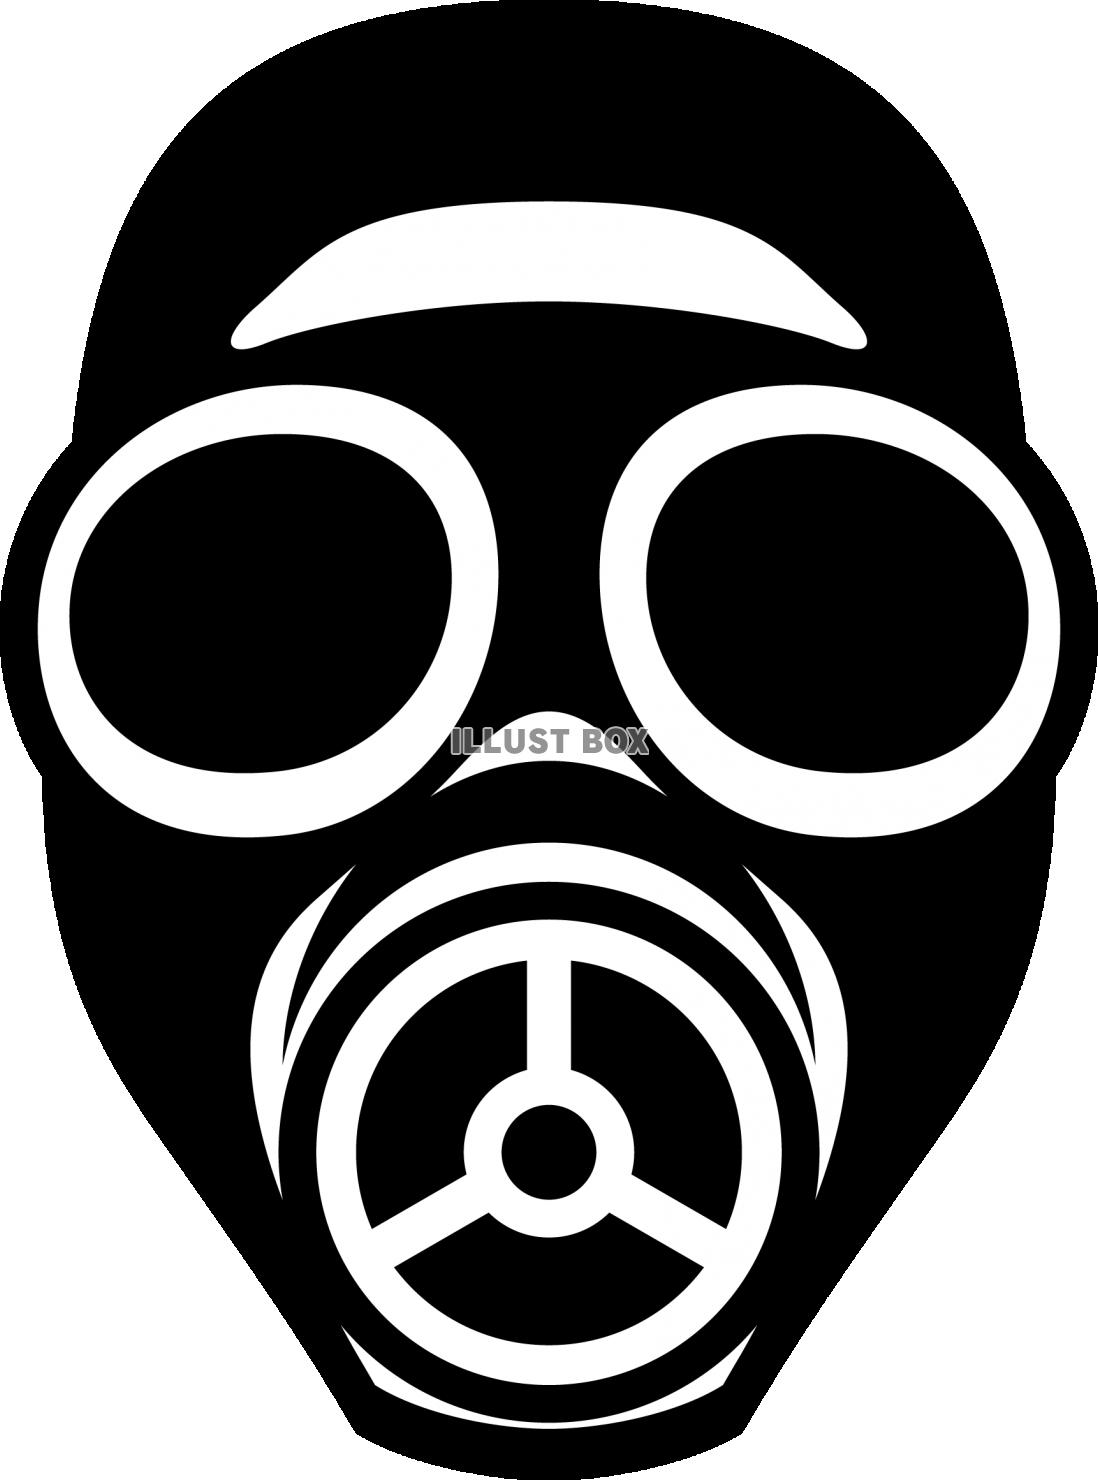 無料イラスト ガスマスク シルエット 危険なイメージ